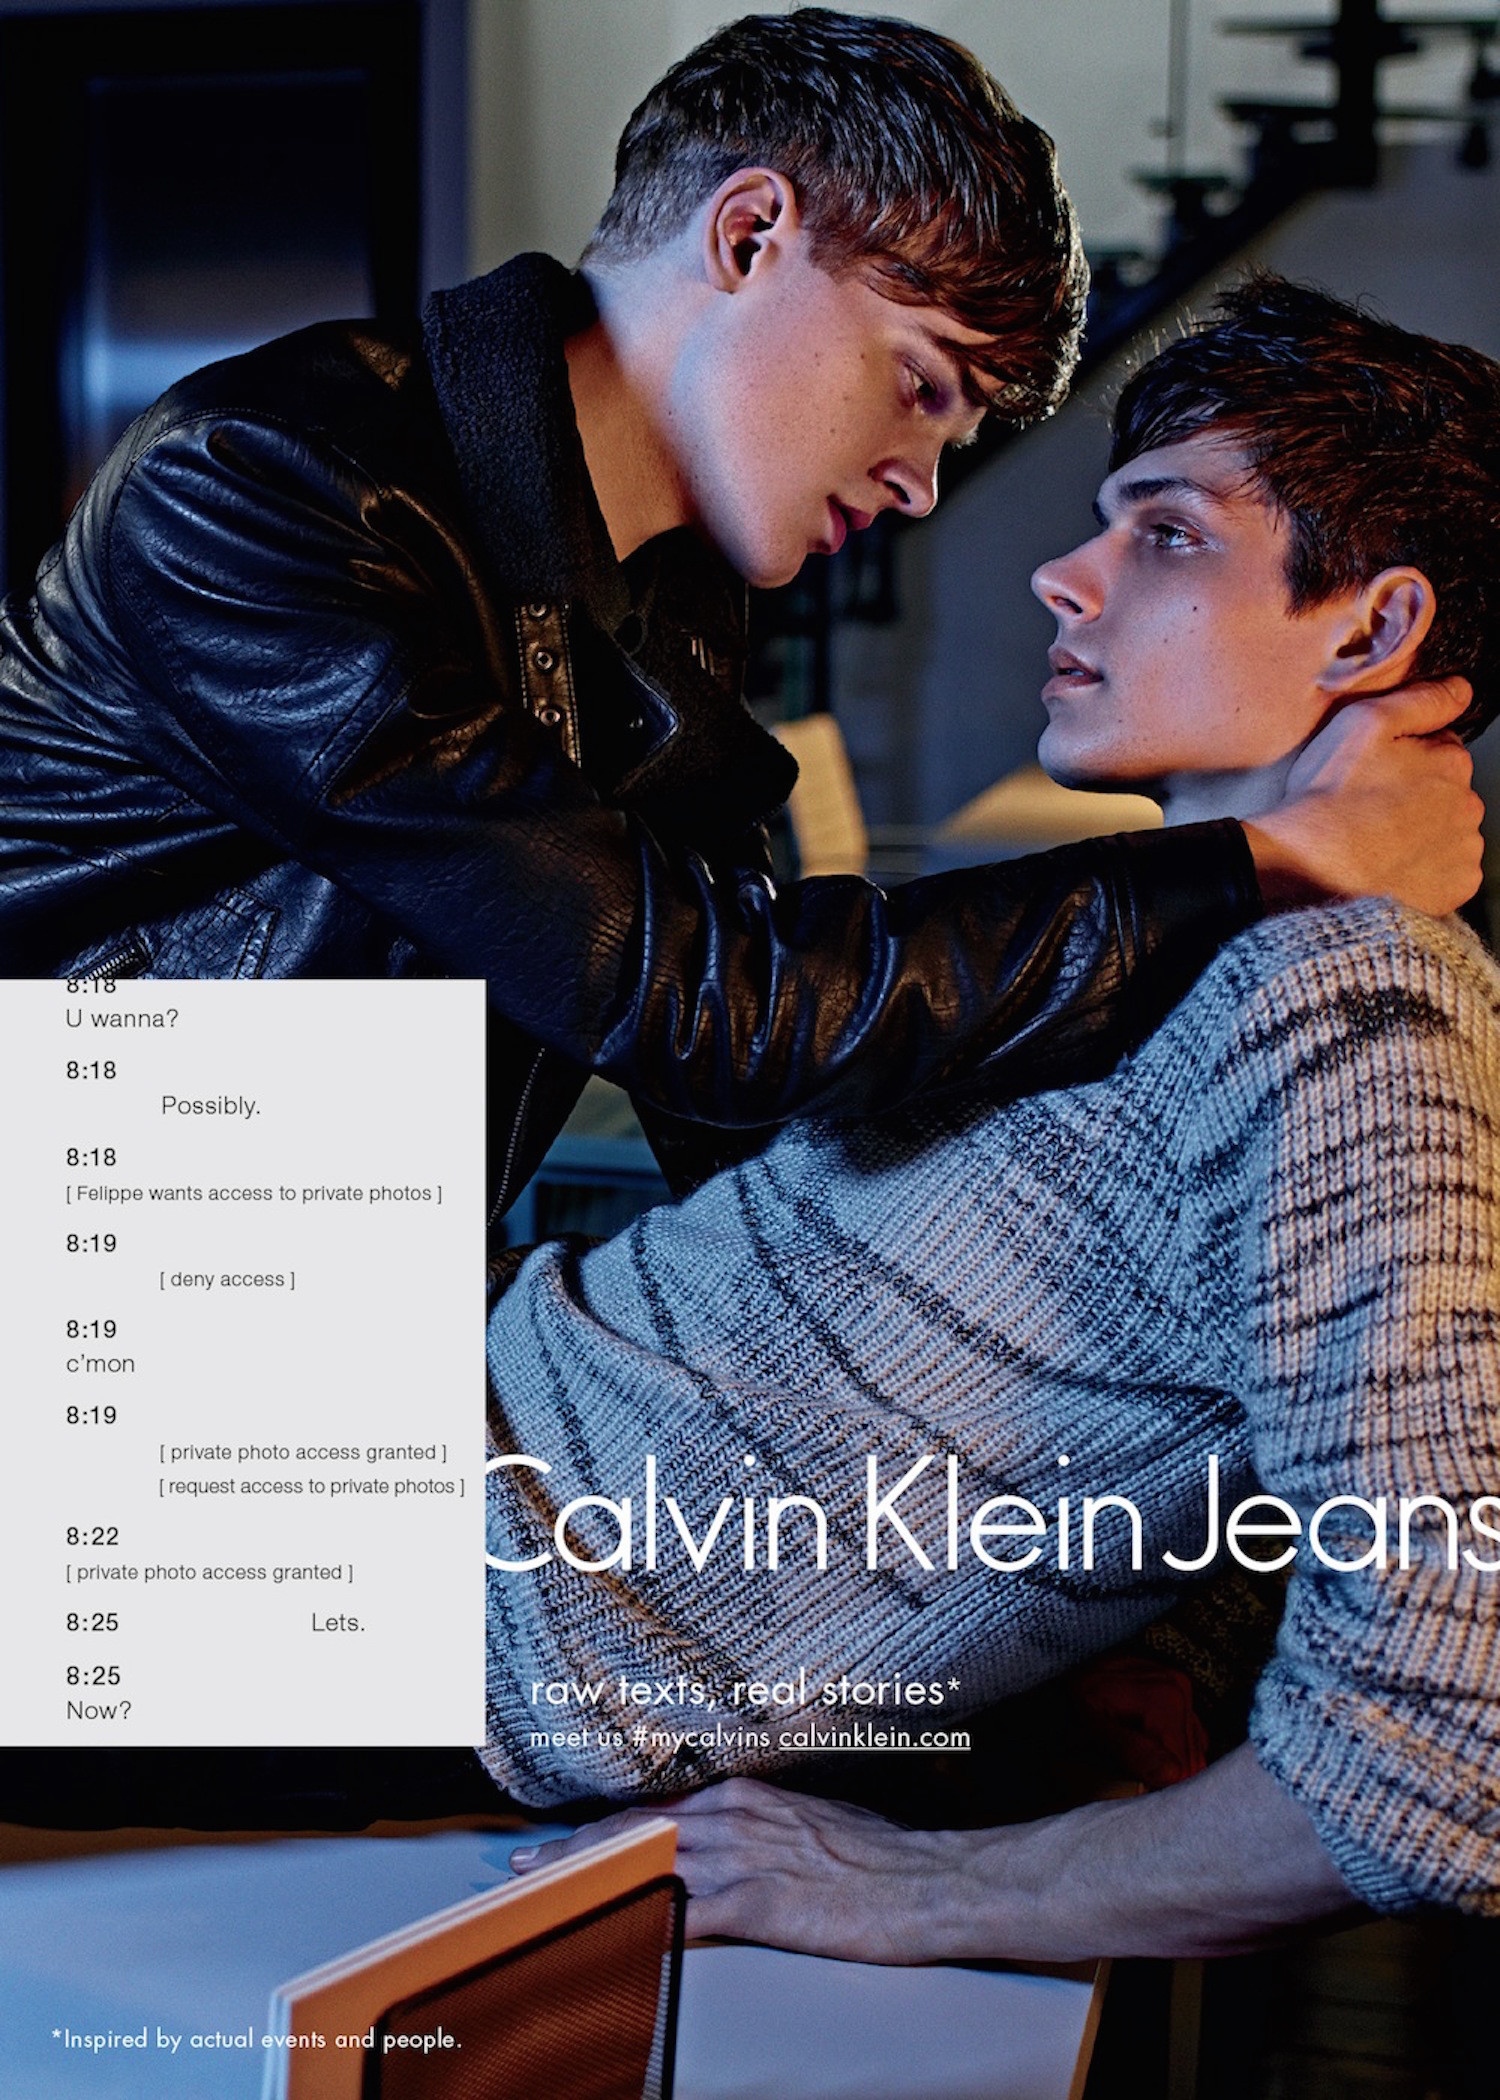 Tinh yeu dong tinh lan dau xuat hien trong quang cao cua Calvin Klein-hinh-anh-1